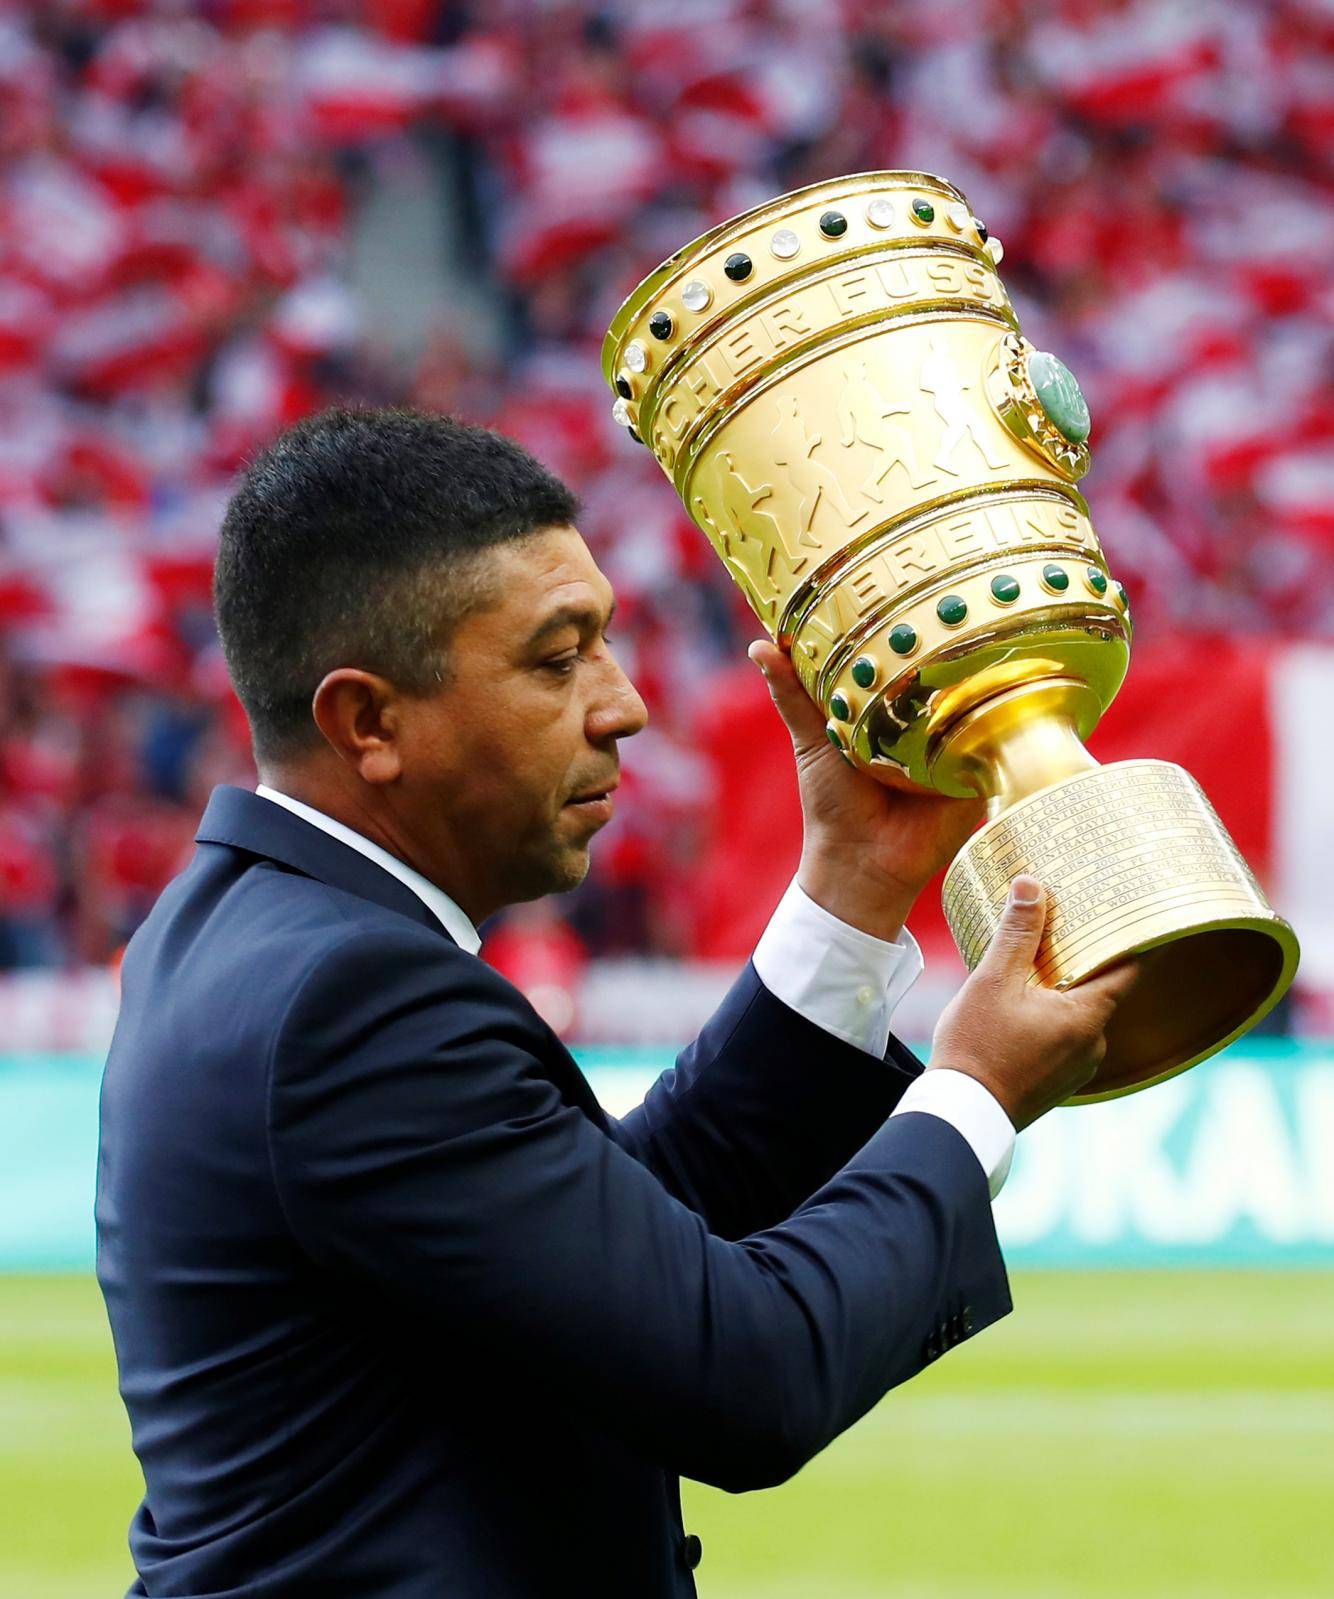 DFB Cup - Final - RB Leipzig v Bayern Munich